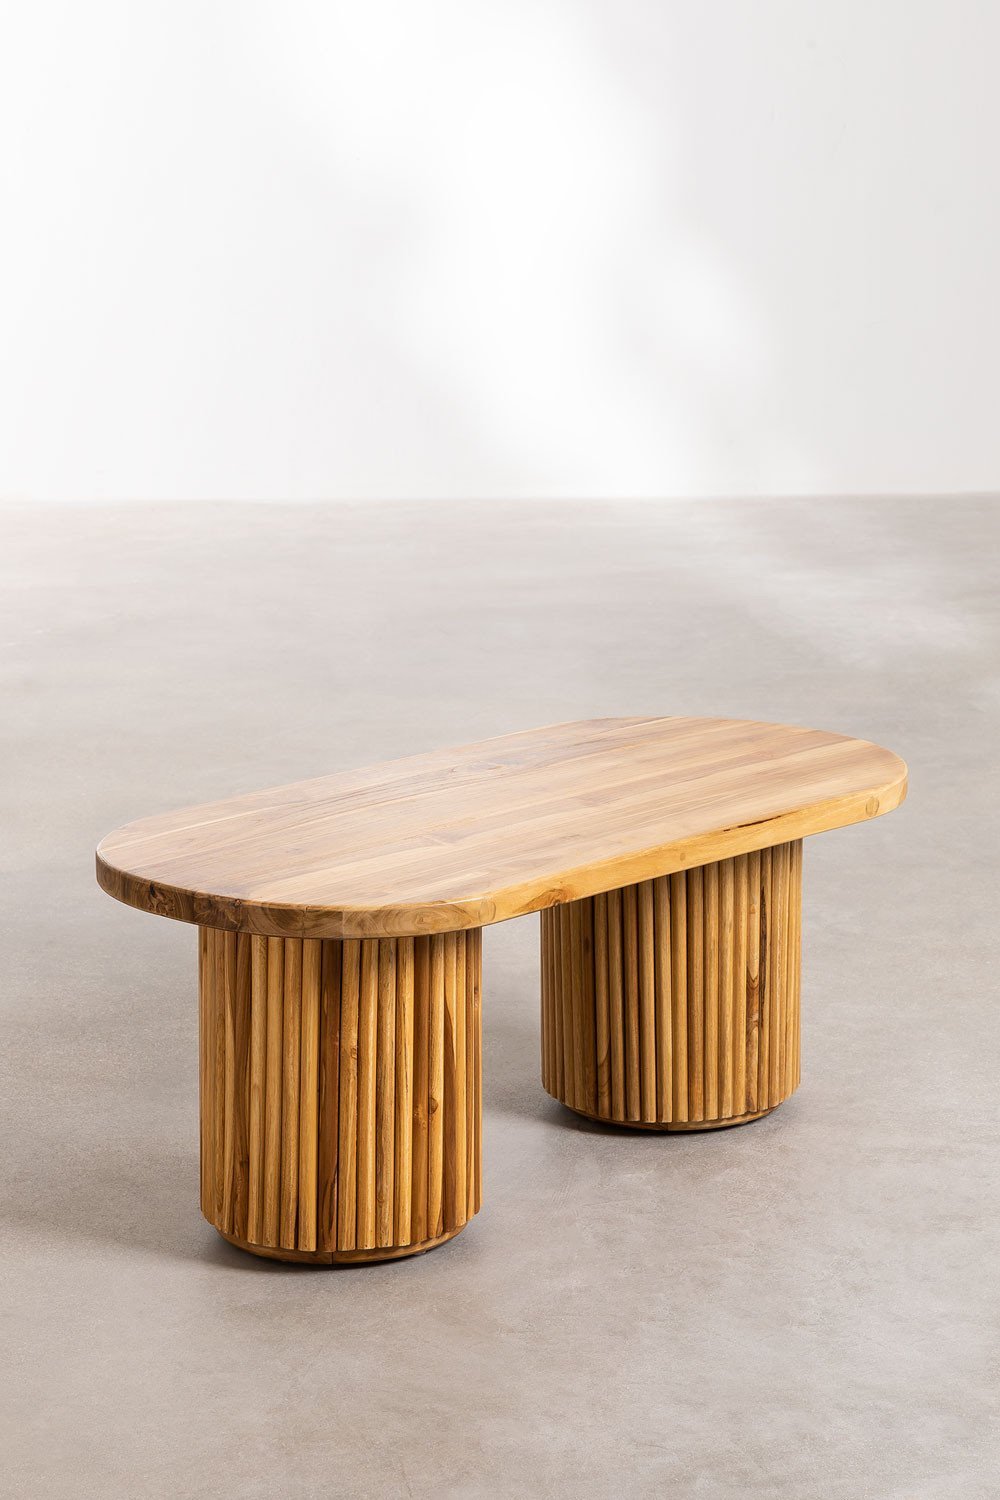 Tavolino ovale in legno di teak (100x50 cm) Randall, immagine della galleria 2